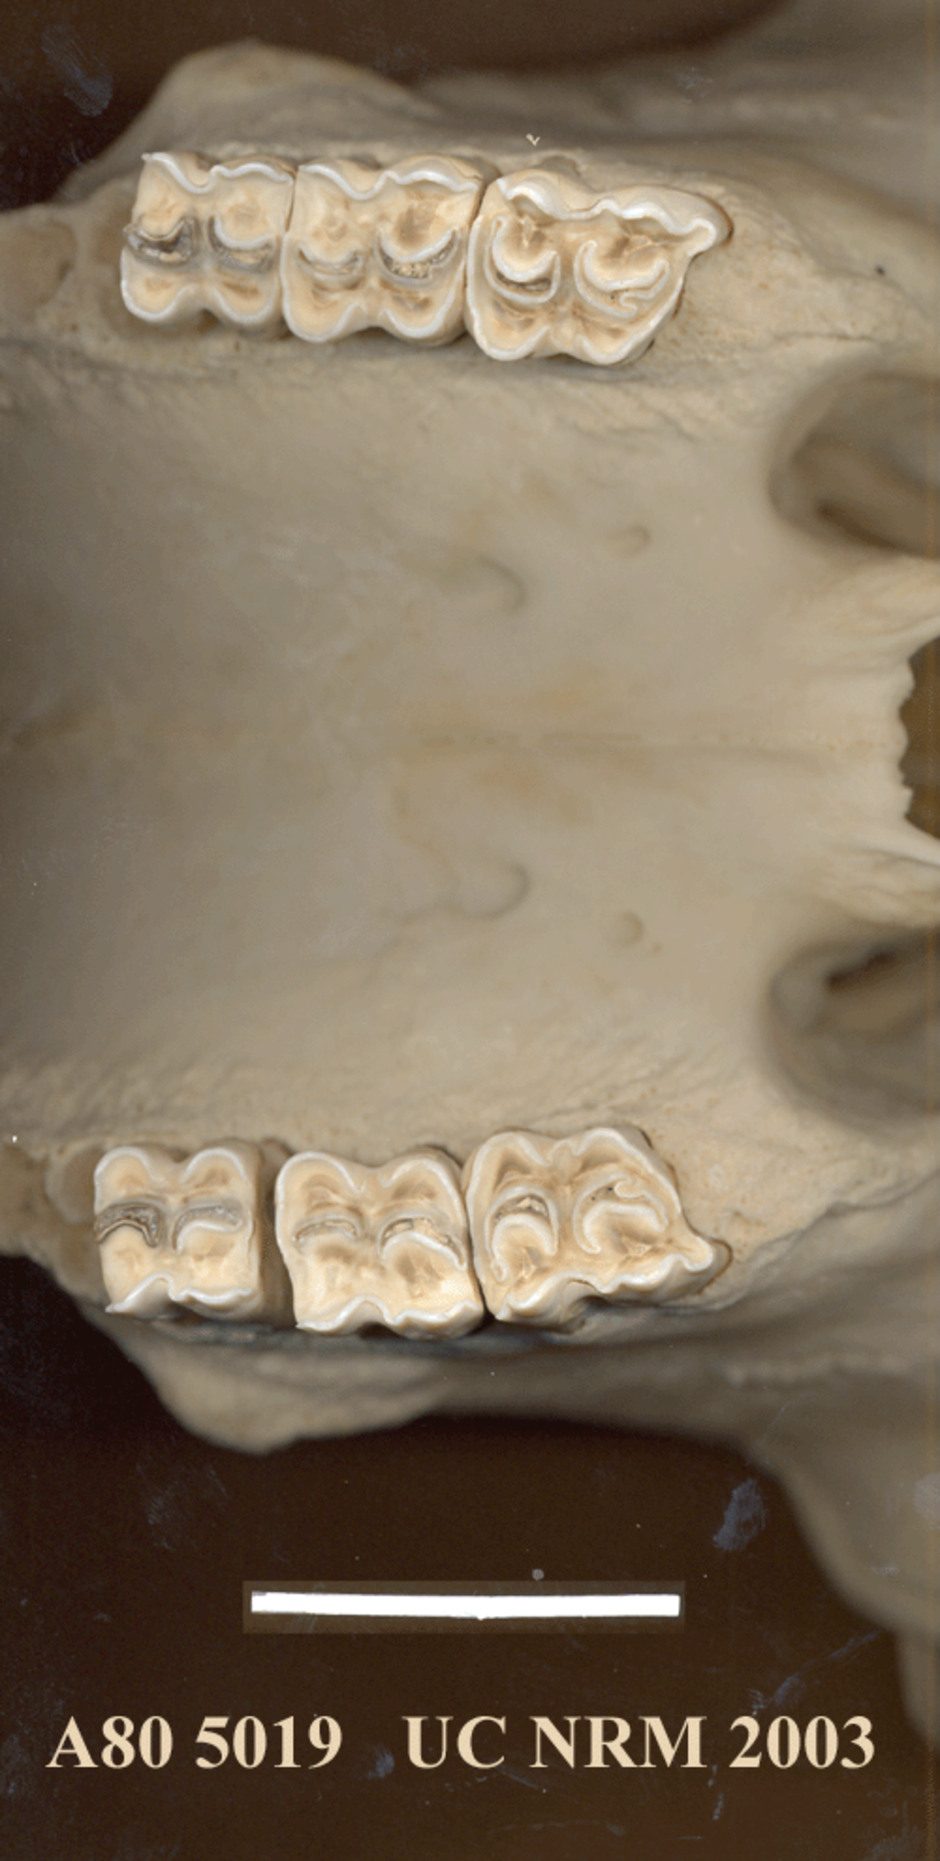 Detalj av tänderna i kraniet.